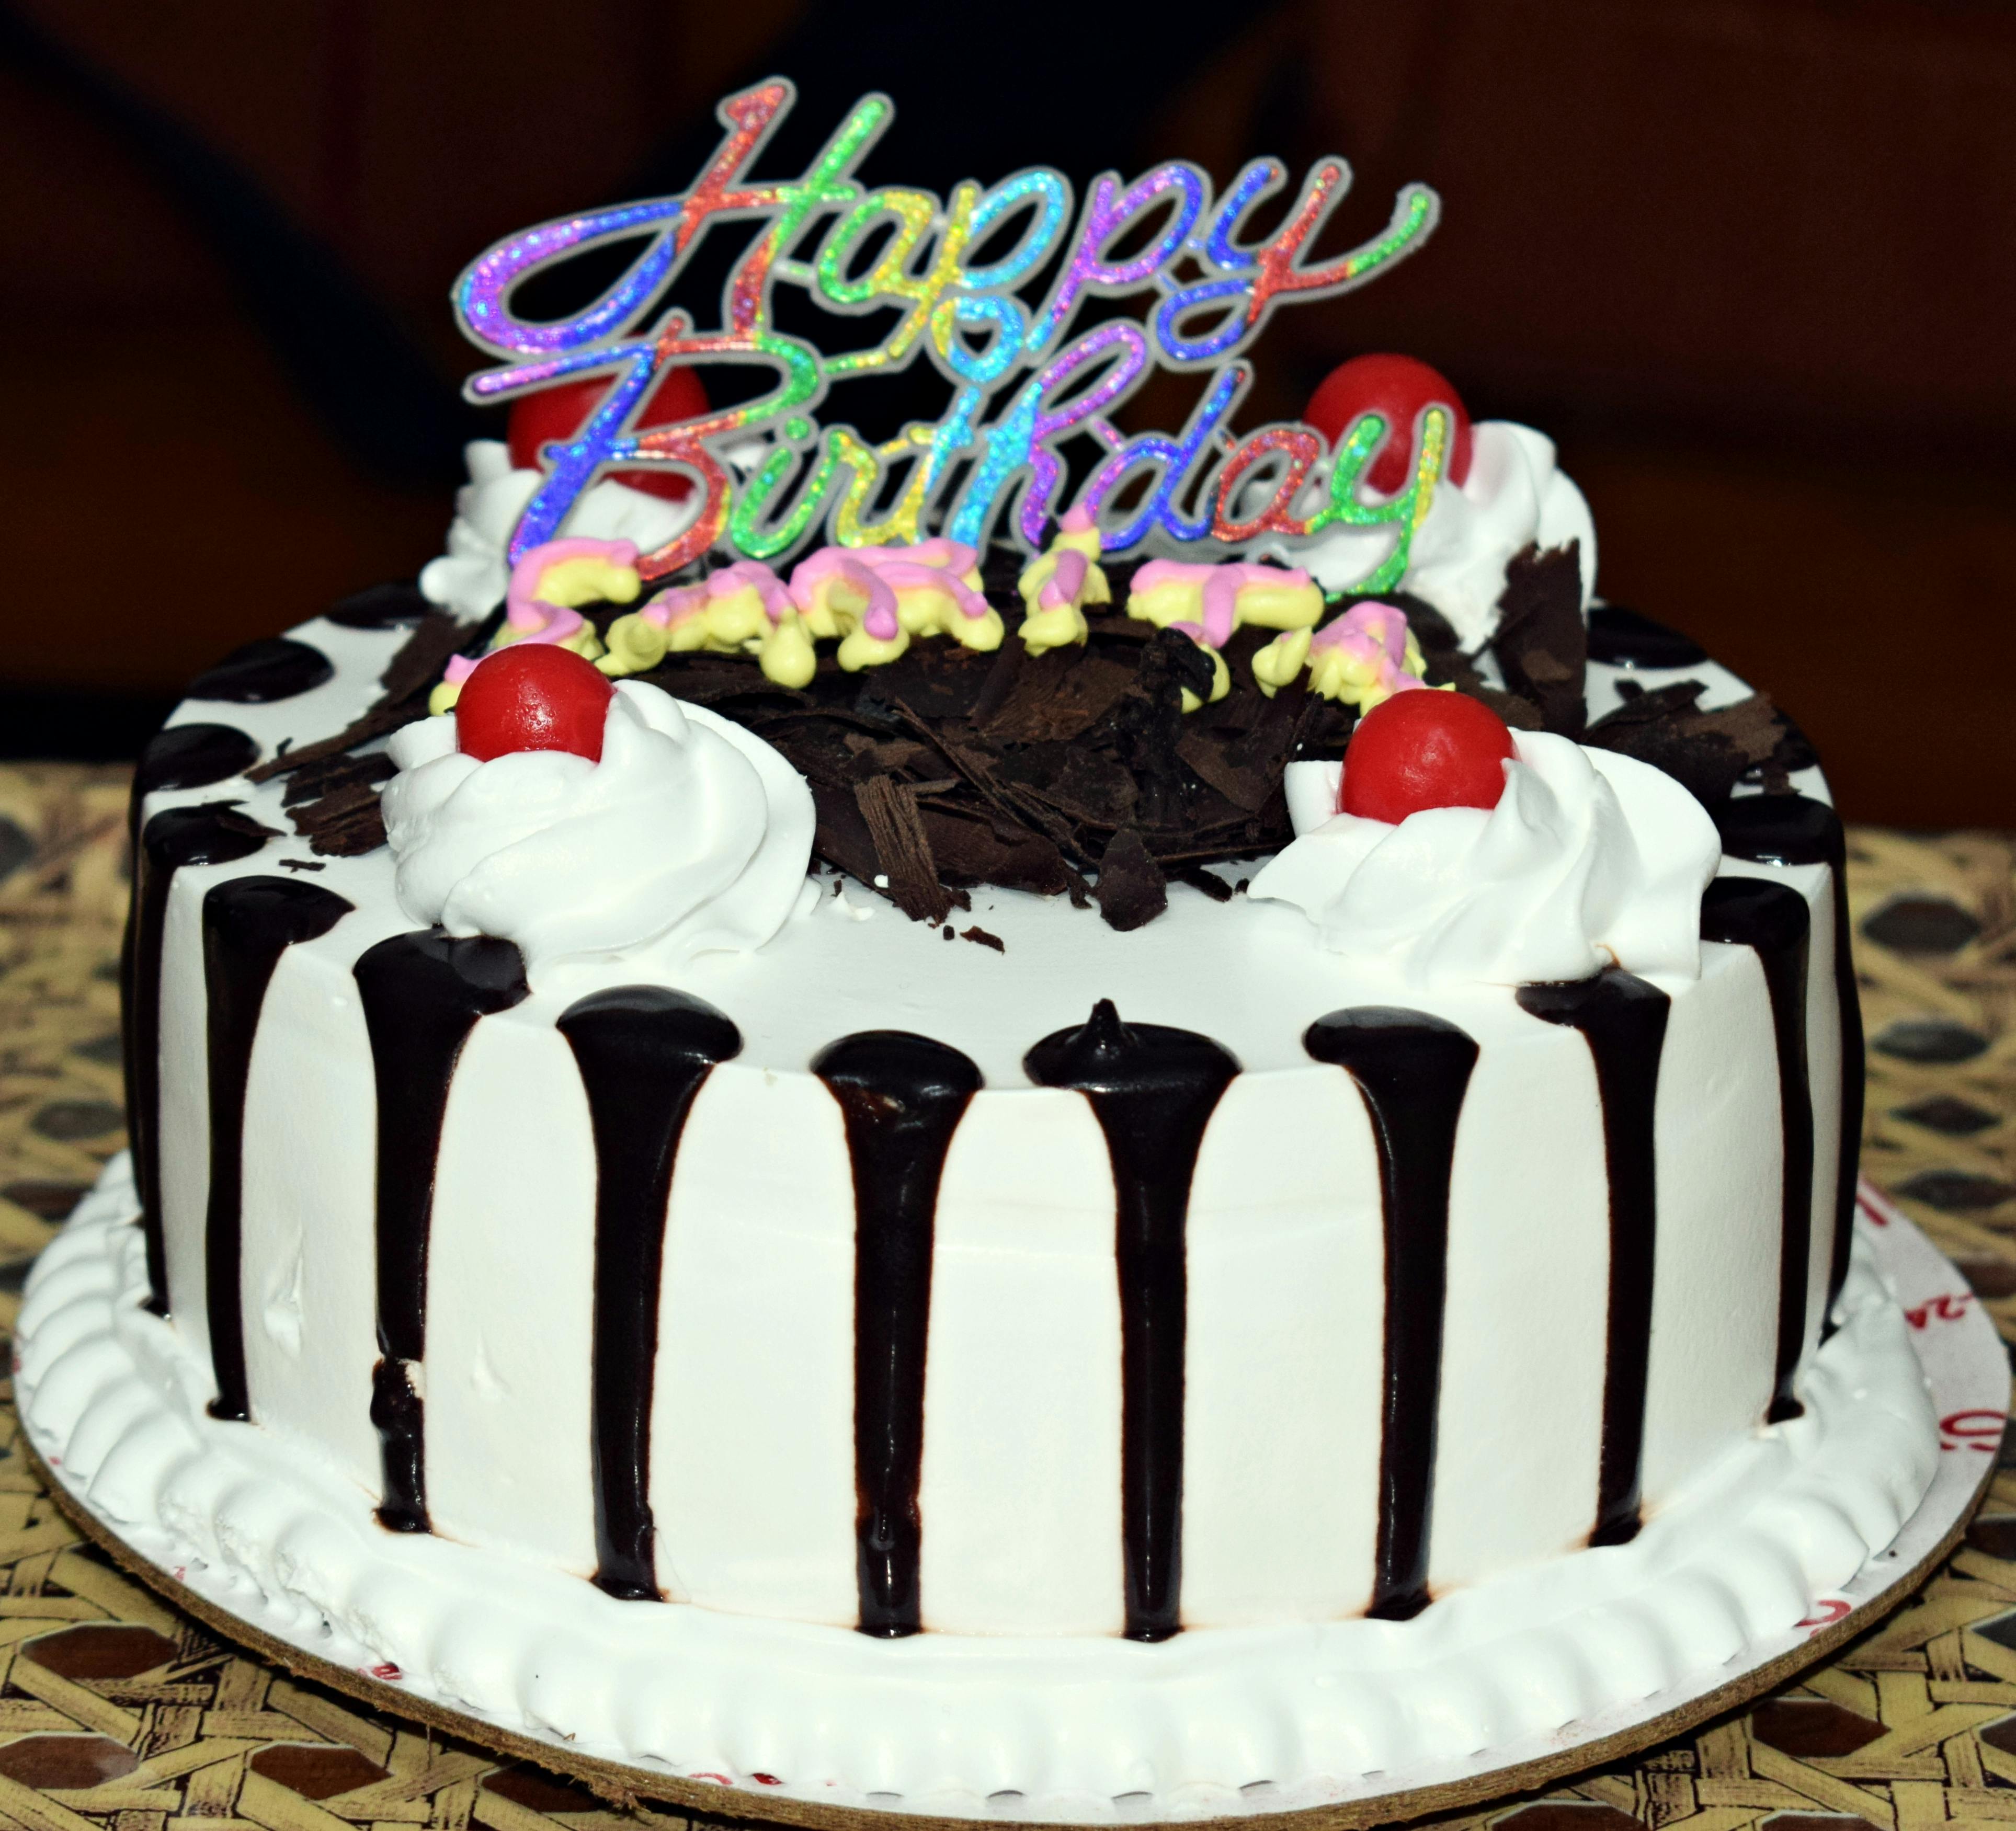 Free stock photo of birthday, birthday cake, happy birthday